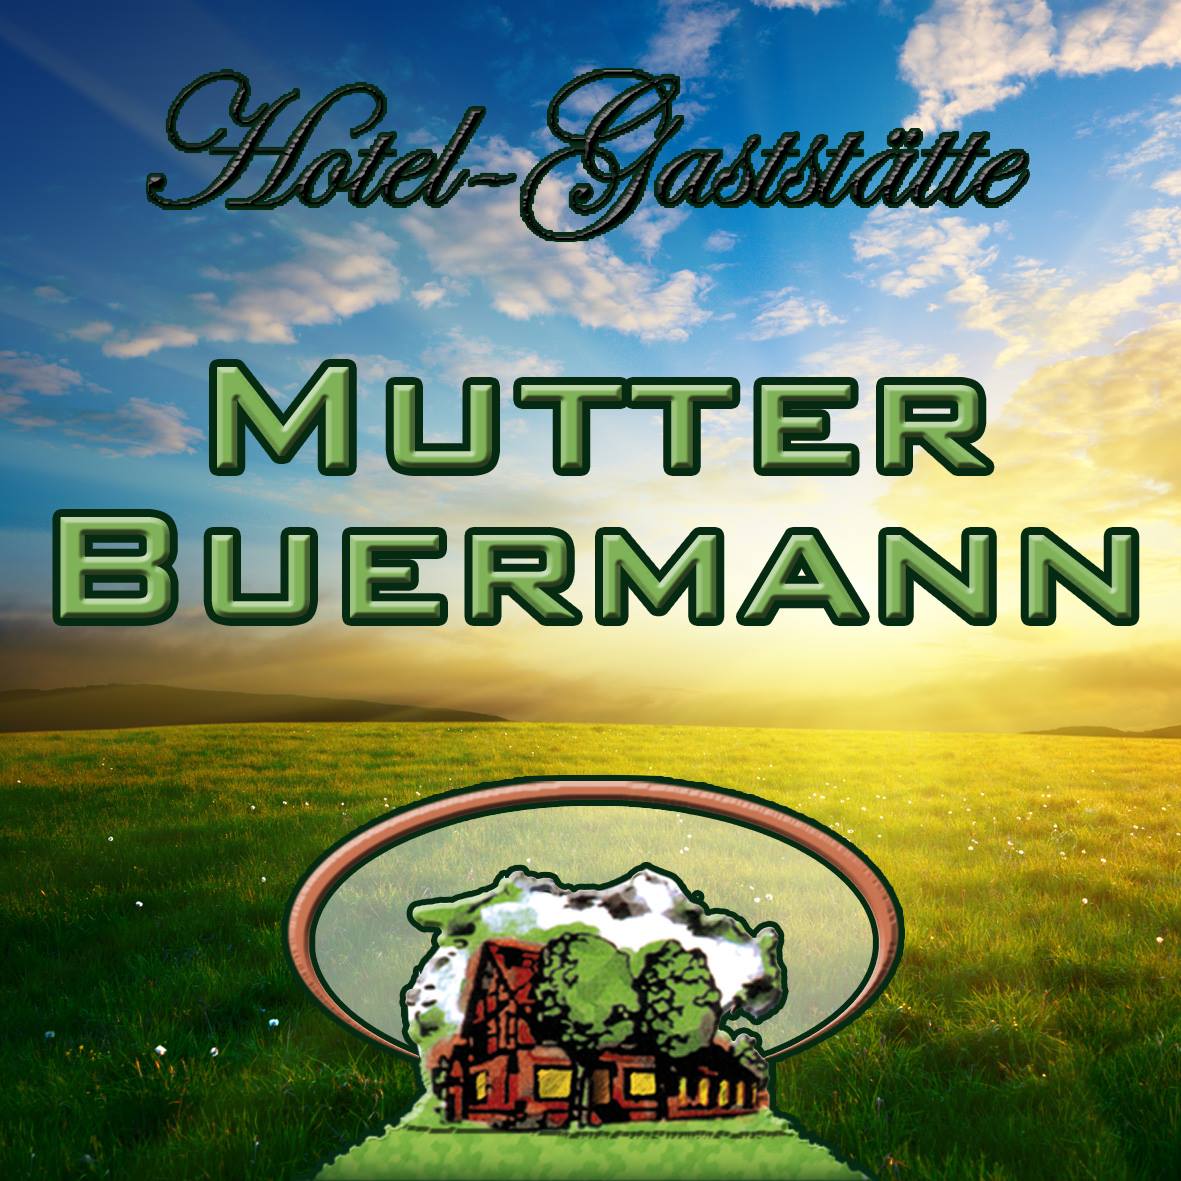 Hotel-Gaststätte Mutter Buermann - Gemeinsam Hannover